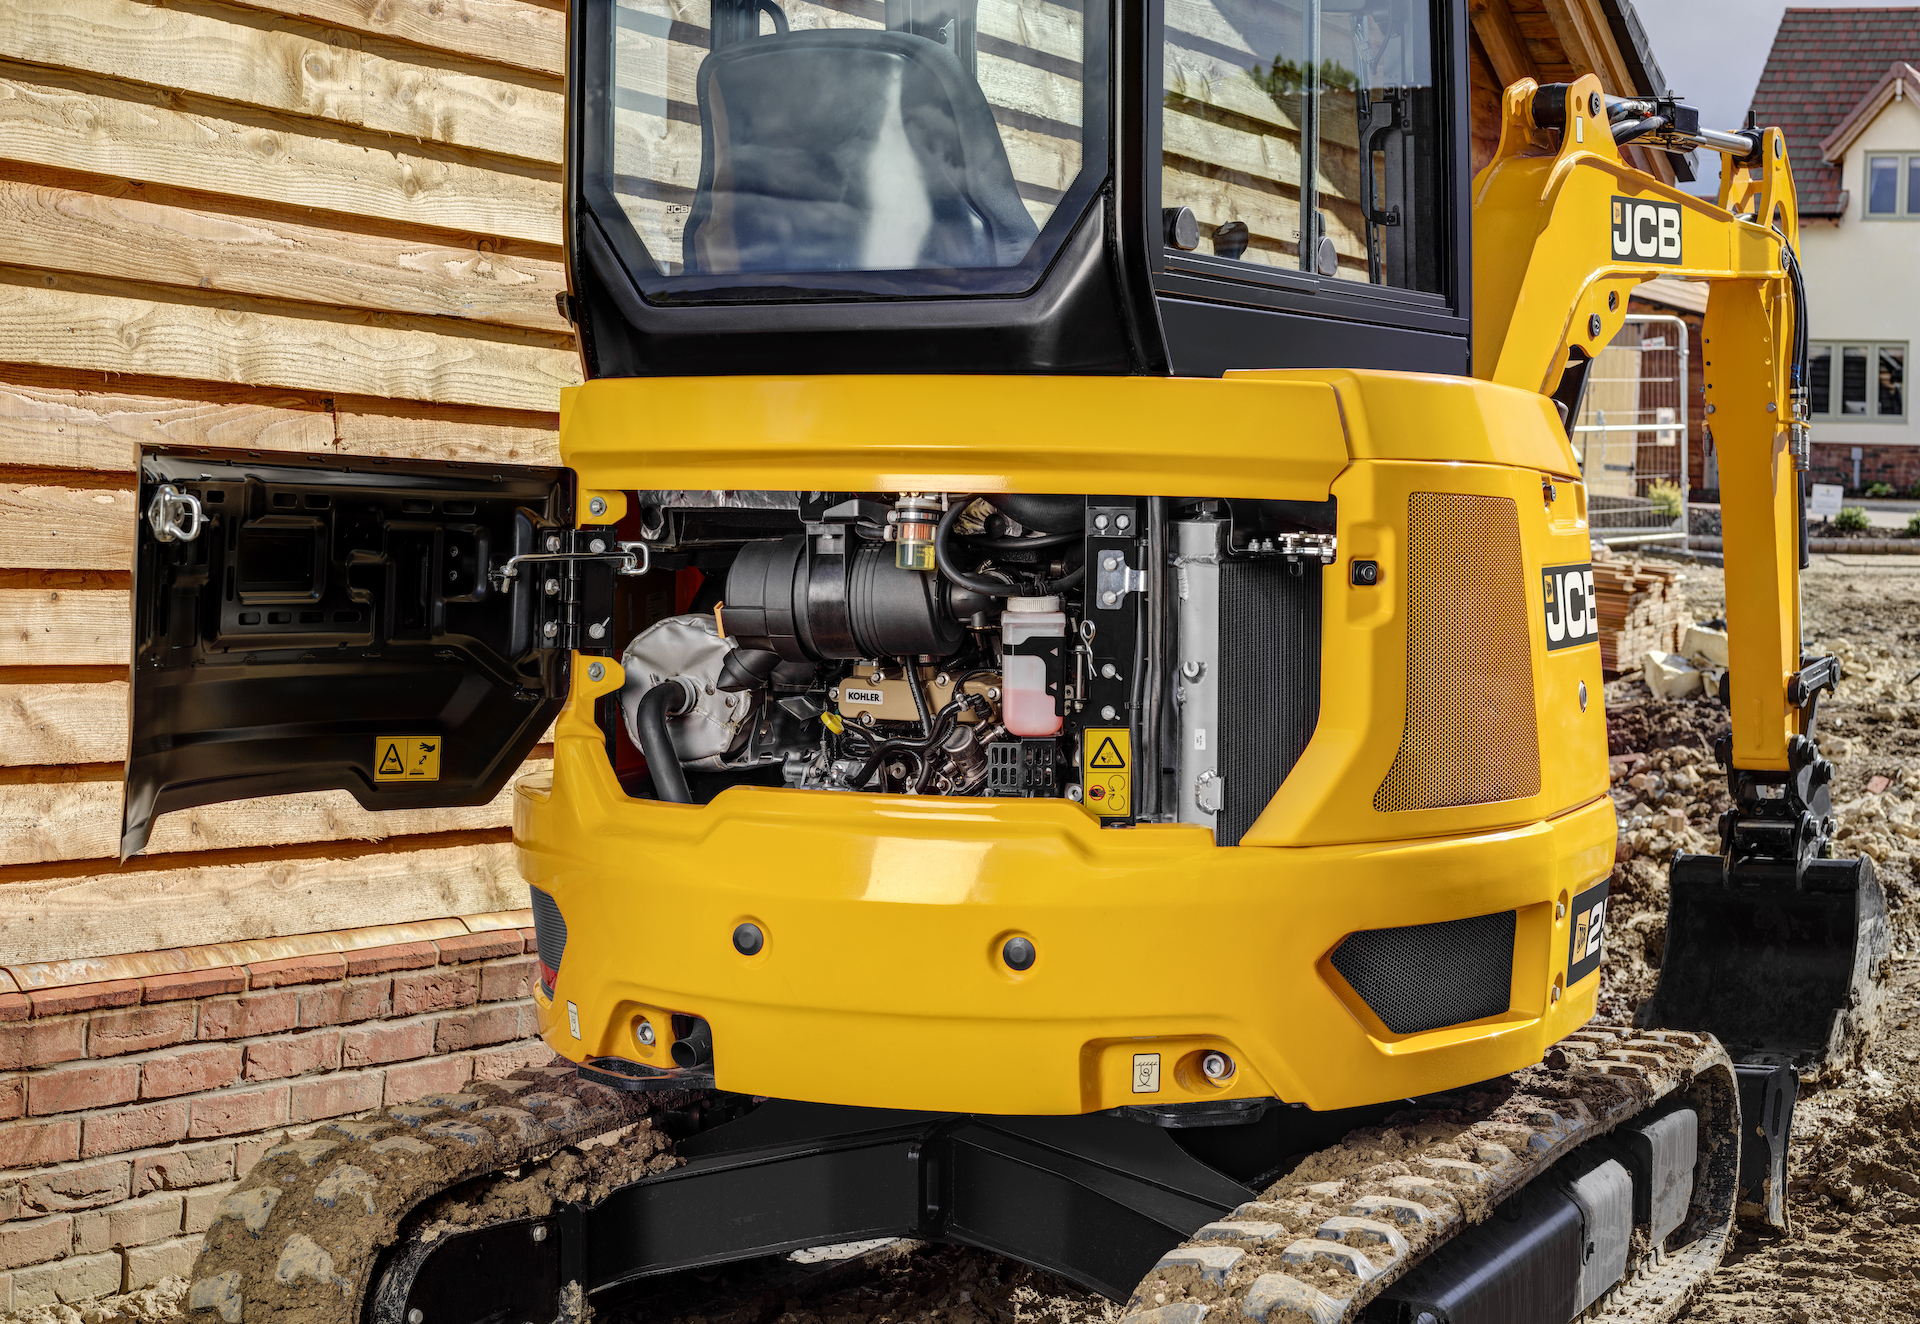 JCB Machines announced a pair of new mini-excavators